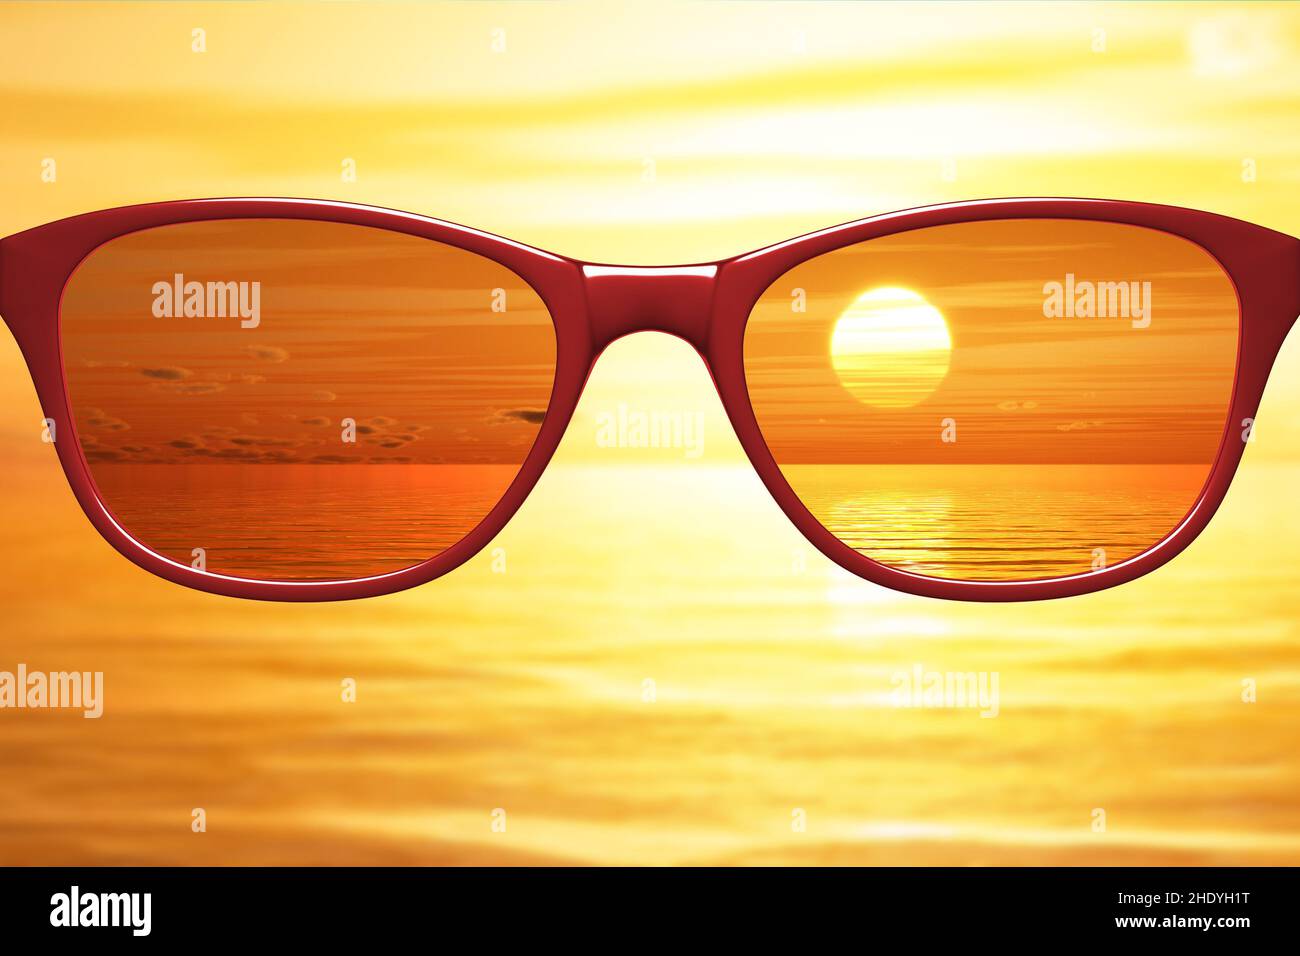 lunettes de soleil, rayons ultraviolets, protection uv, lunettes de vue, lunettes de vue,lunettes, lunettes, rayons ultraviolets, protections uv Banque D'Images